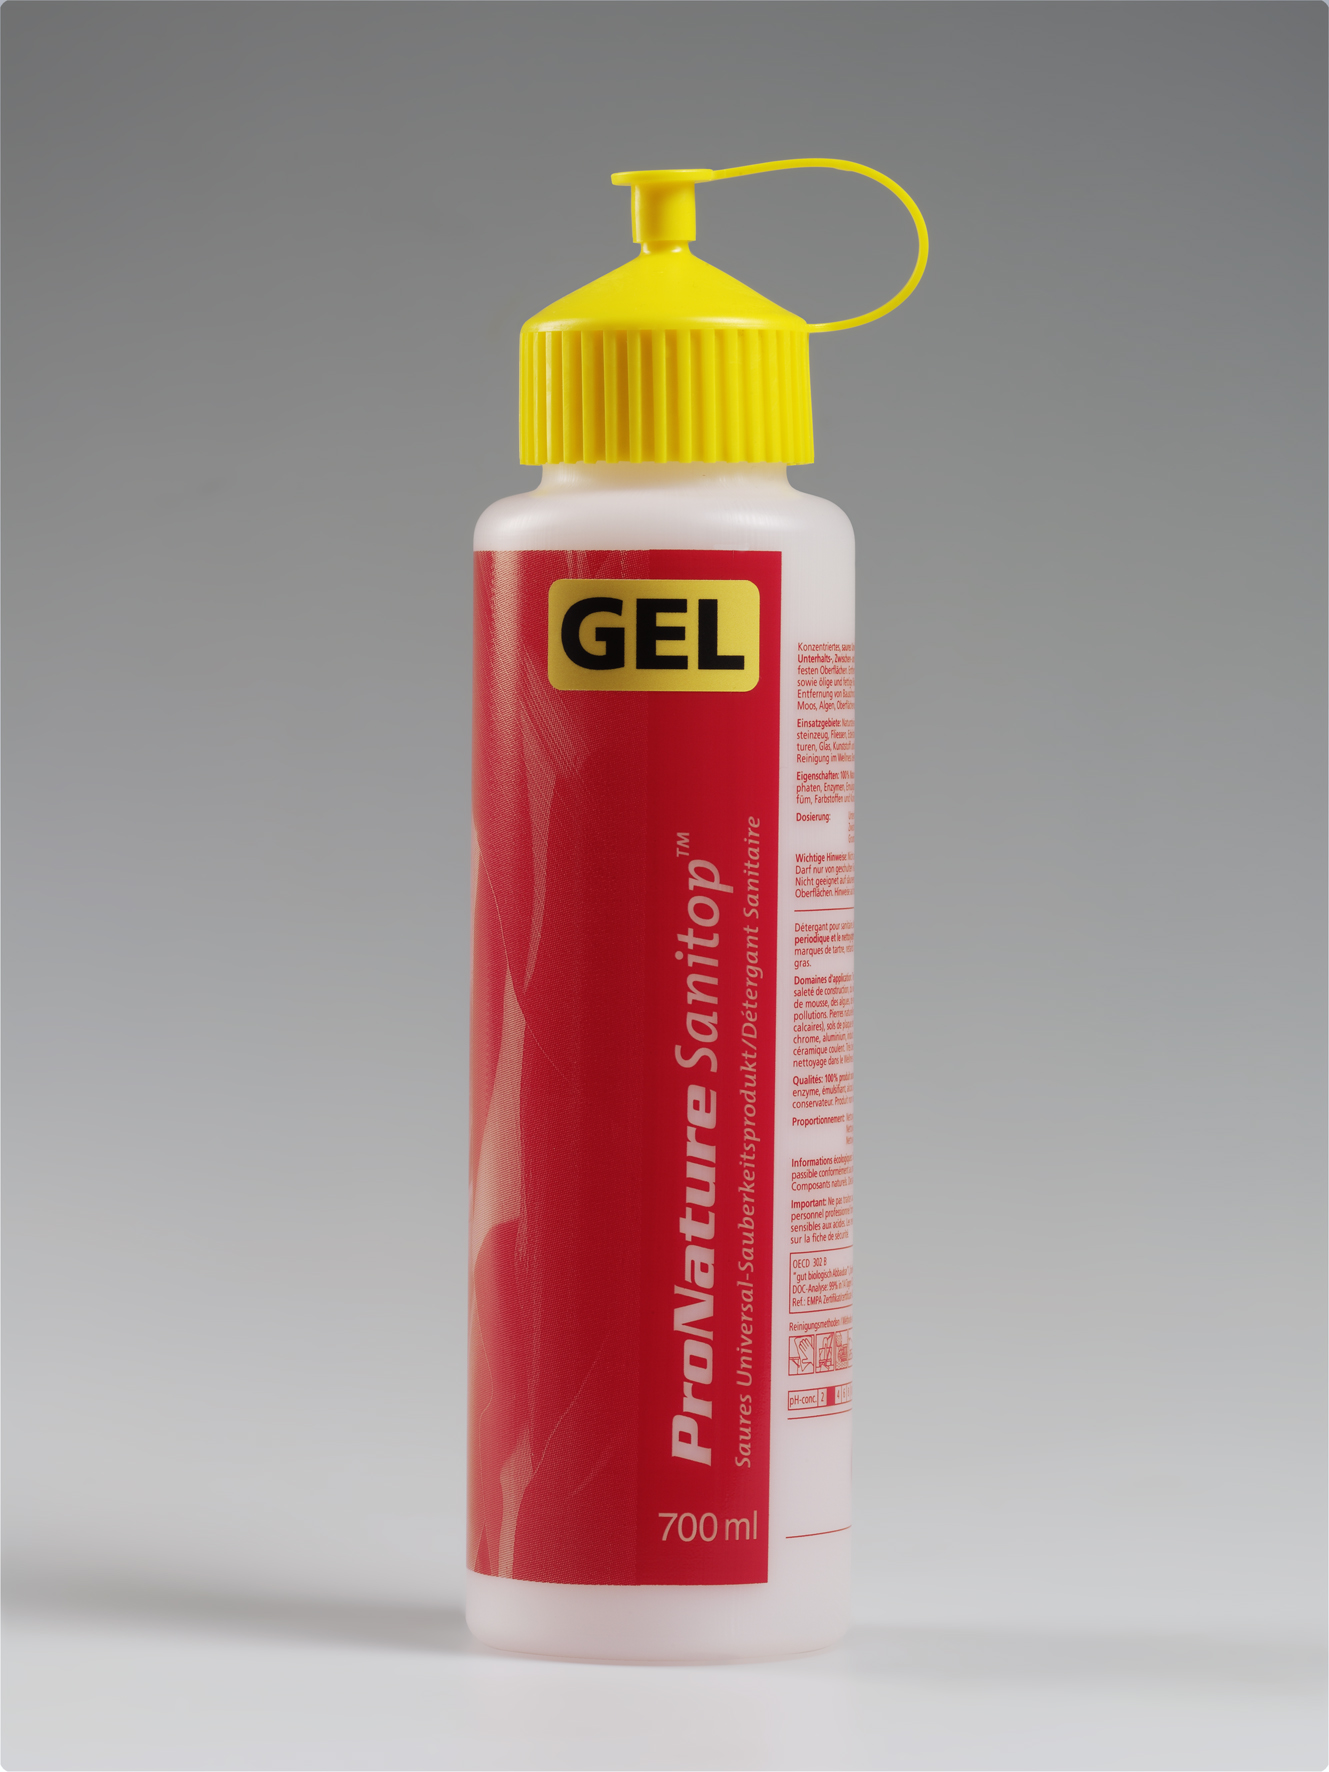 Dosierflasche "Sanitop GEL", Rot/Gelb